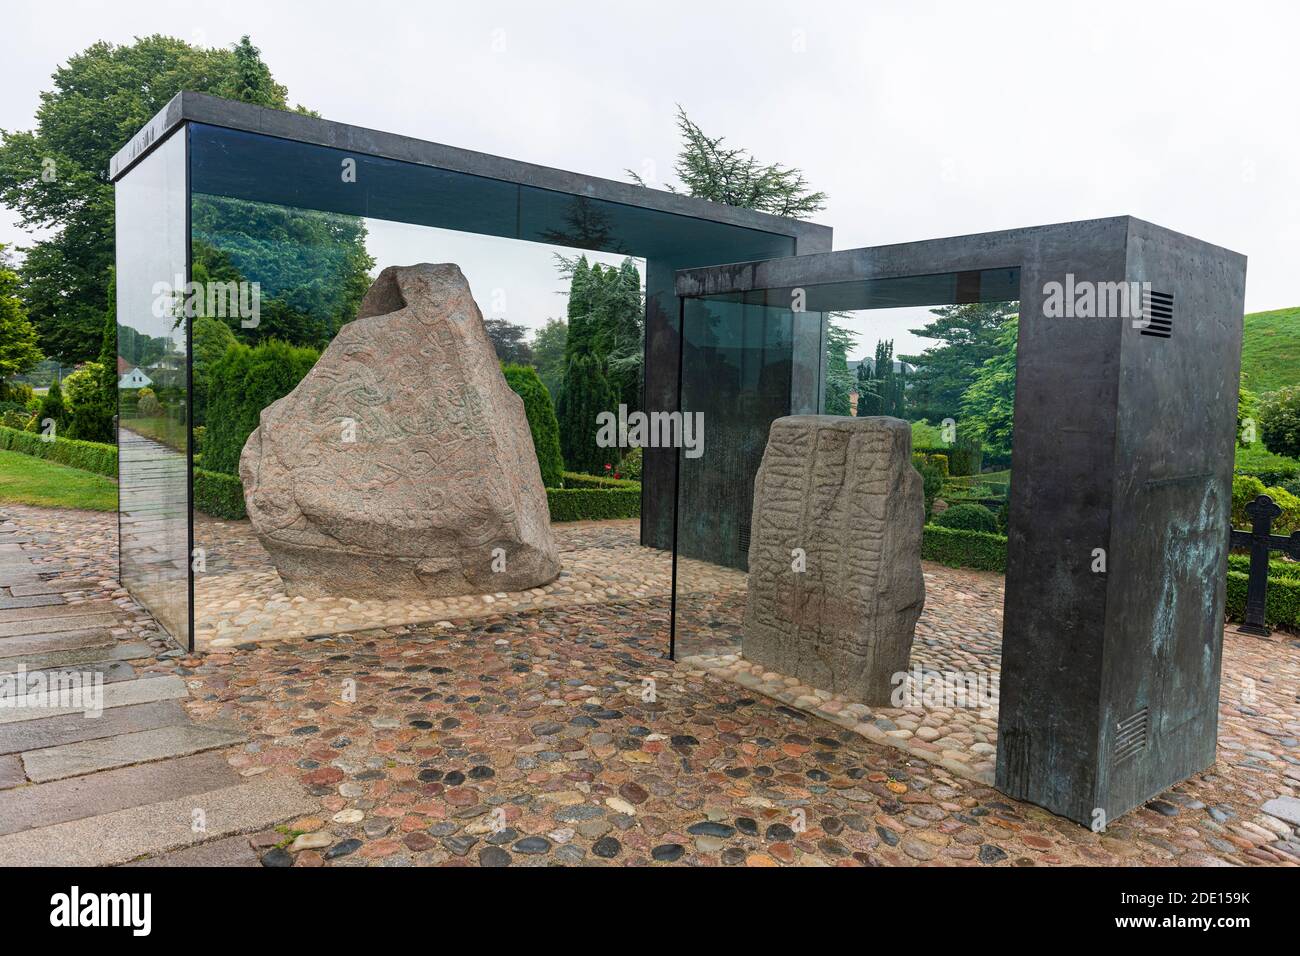 Geschnitzte Runensteine, UNESCO-Weltkulturerbe, Jelling Stones, Jelling, Dänemark, Skandinavien, Europa Stockfoto